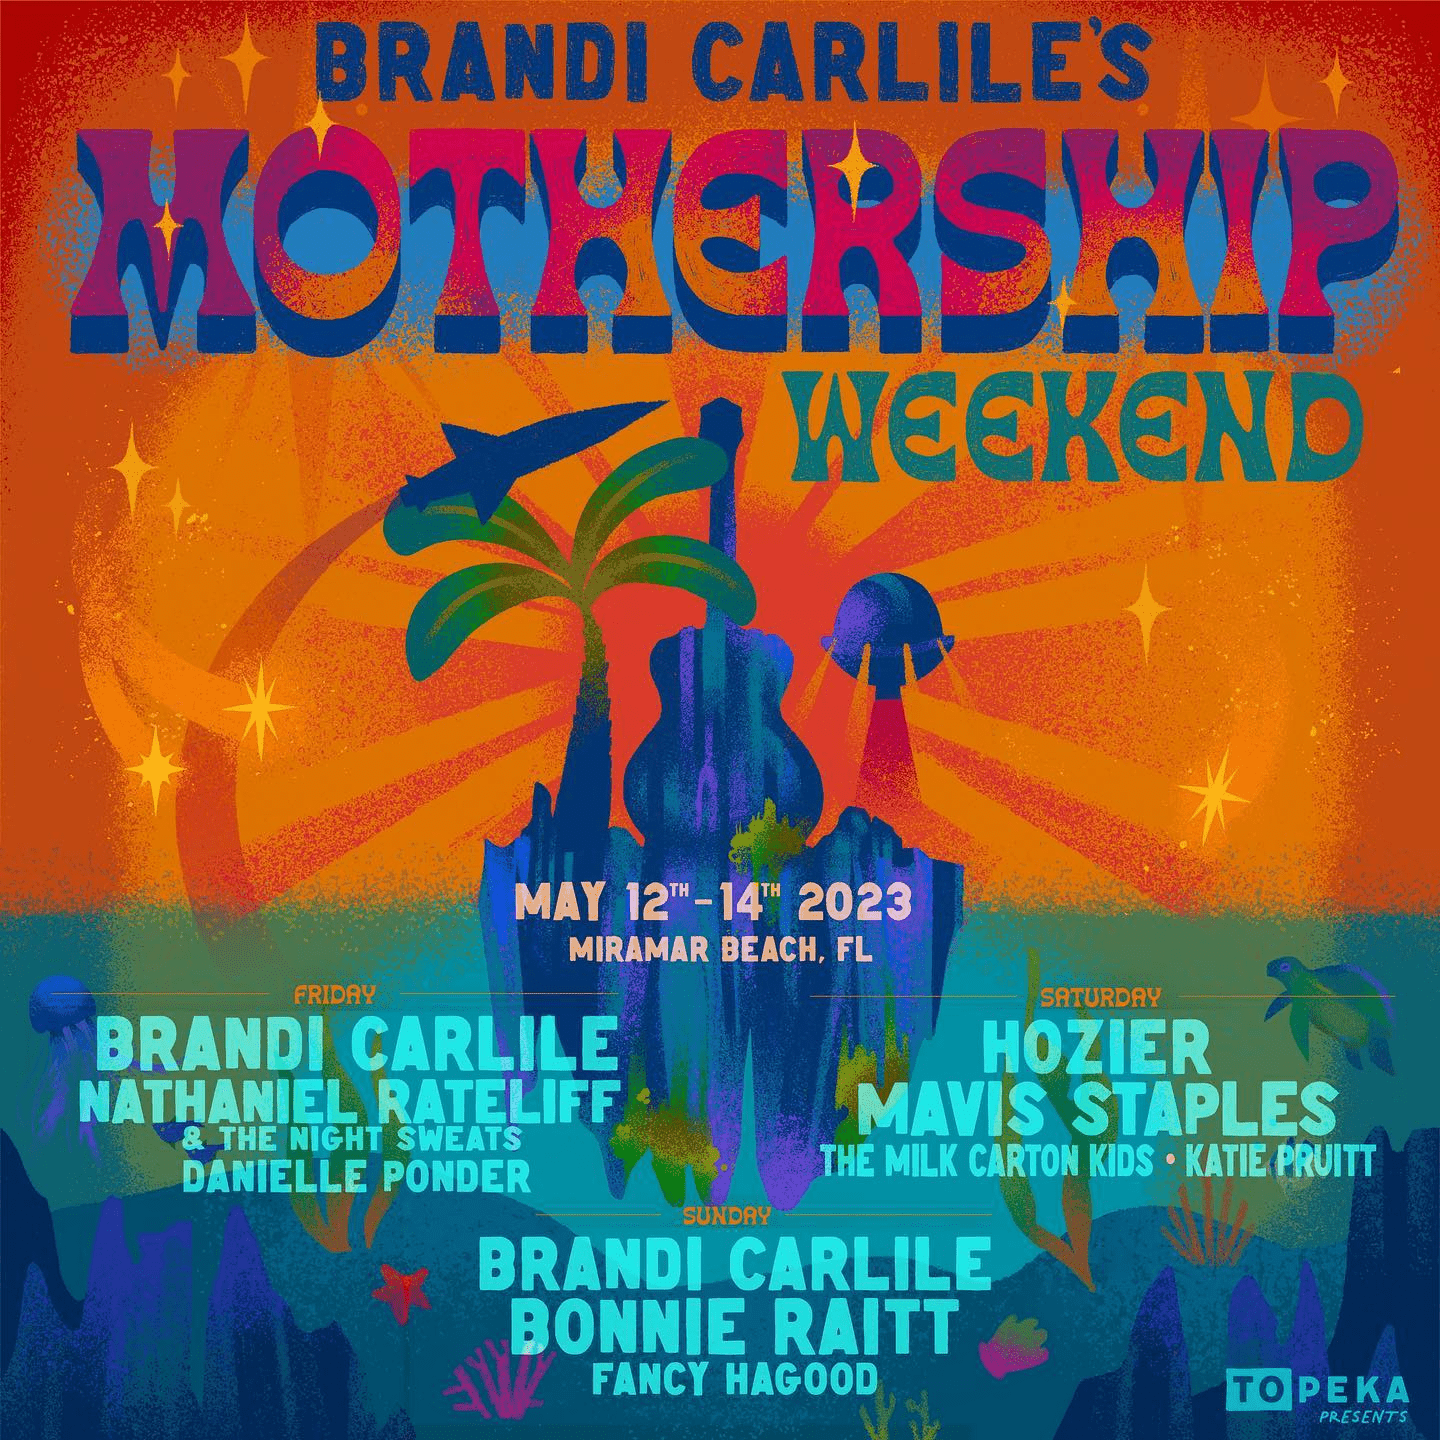 Brandi Carlile’s Mothership Weekend 2023 Lineup poster image